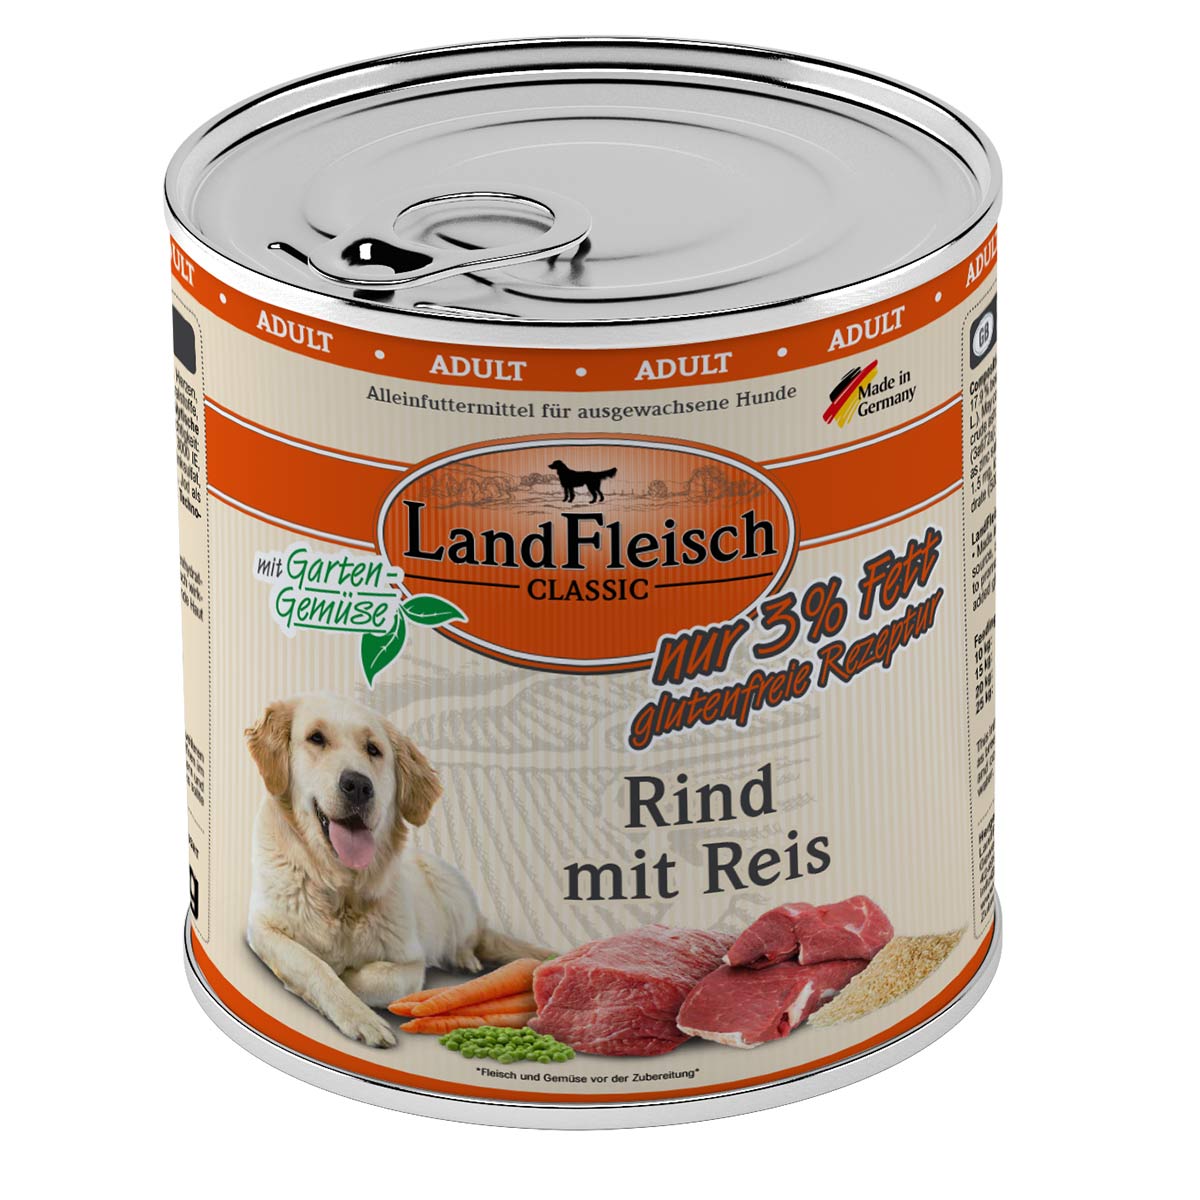 LandFleisch Dog Classic Rind mit Reis 6x800g von Landfleisch Pur